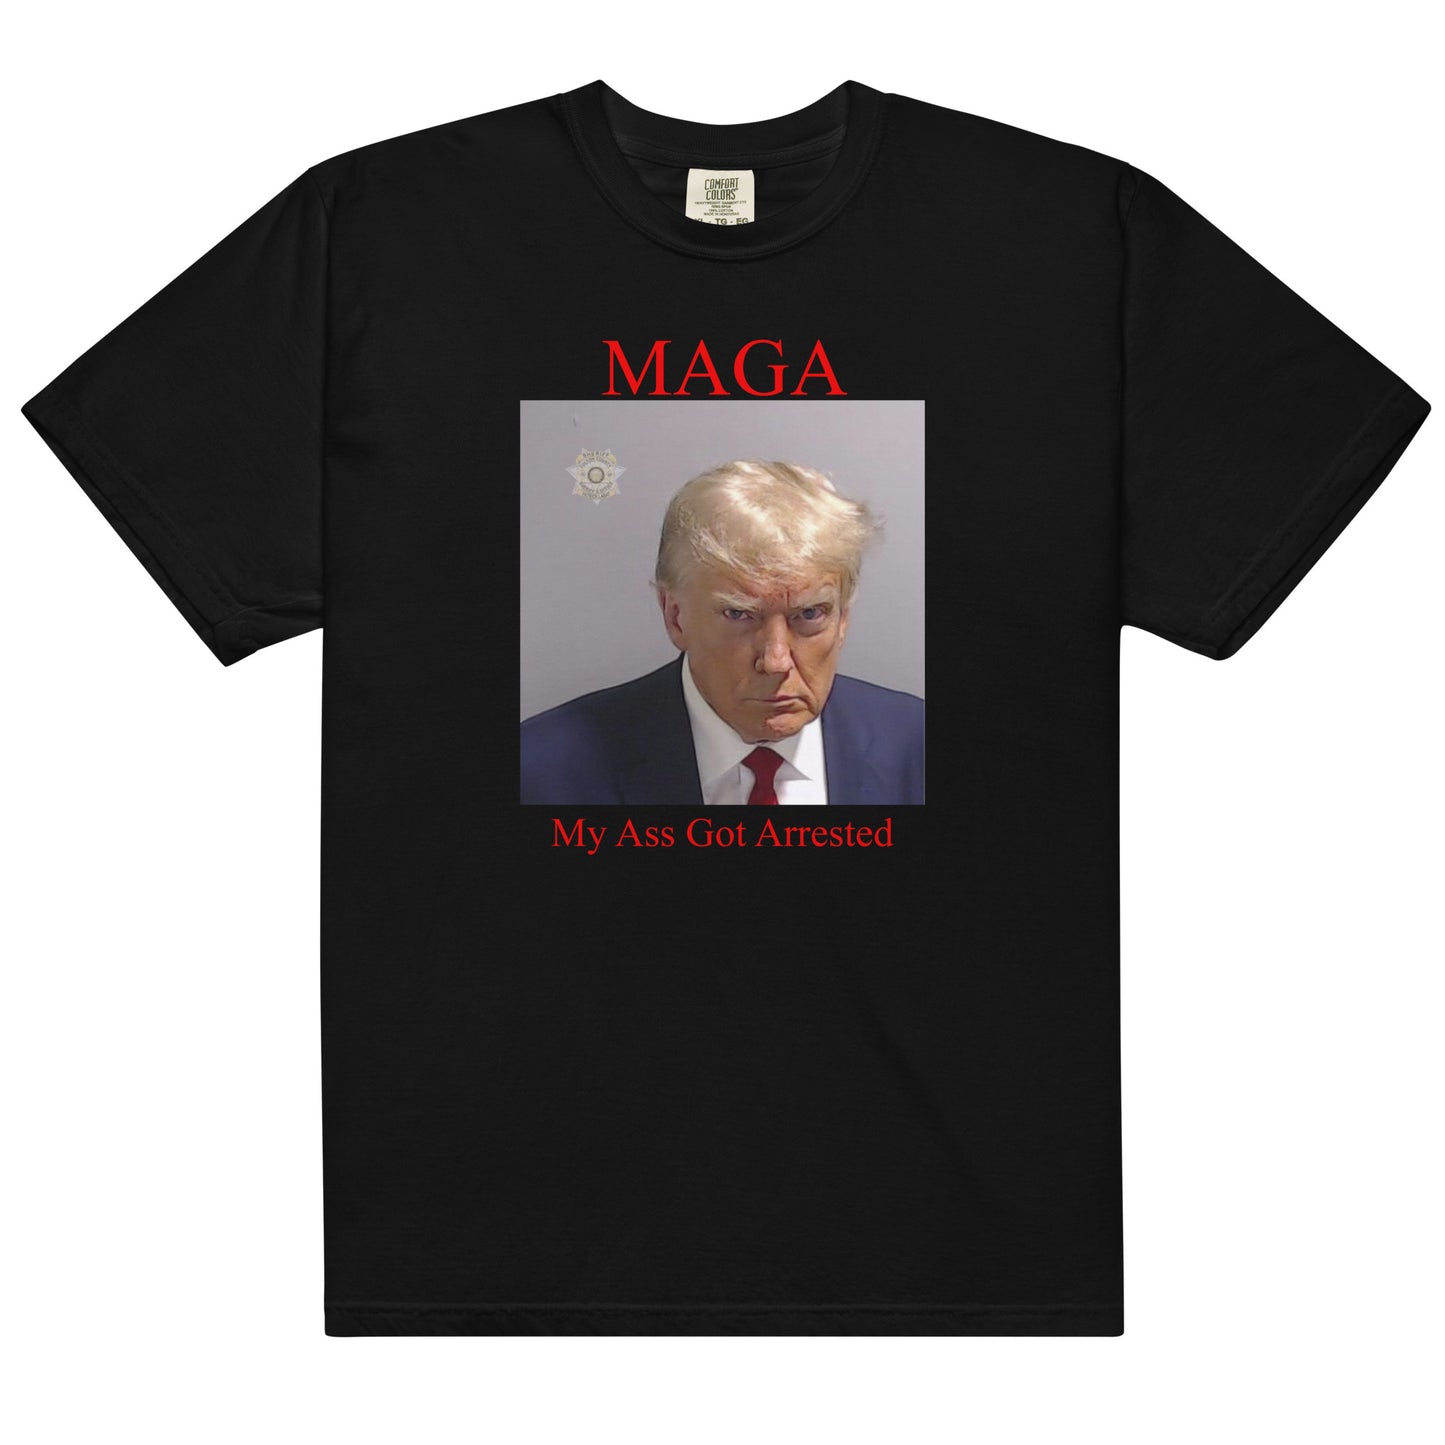 Trump "MAGA" shirt